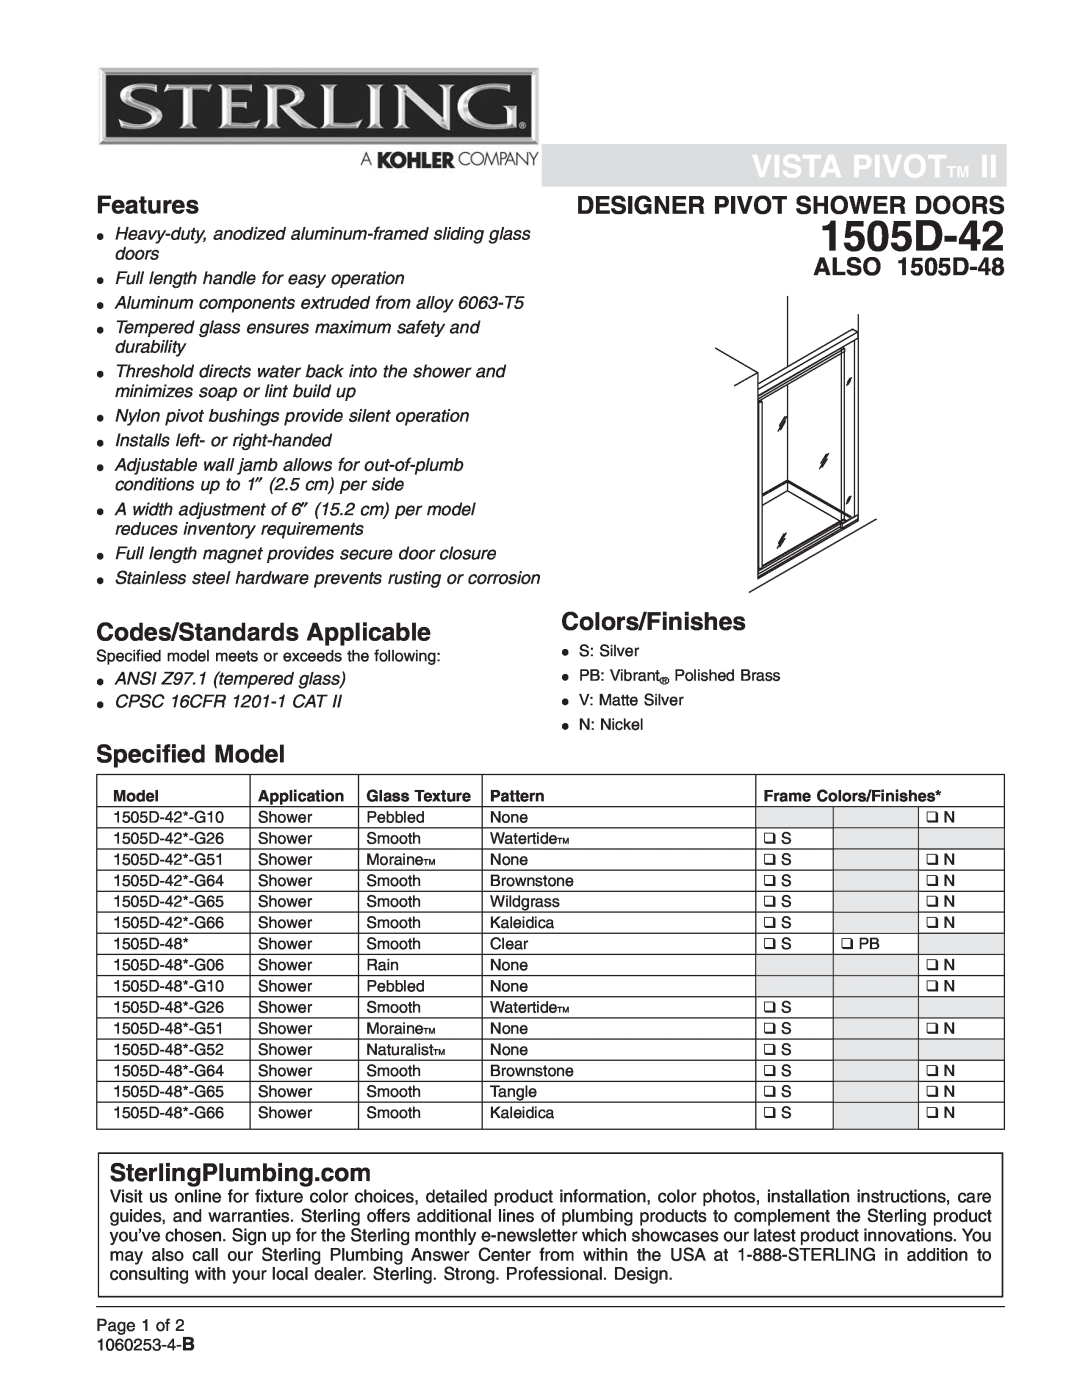 Sterling Plumbing installation instructions Vista Pivottm, Features, Designer Pivot Shower Doors, ALSO 1505D-48 